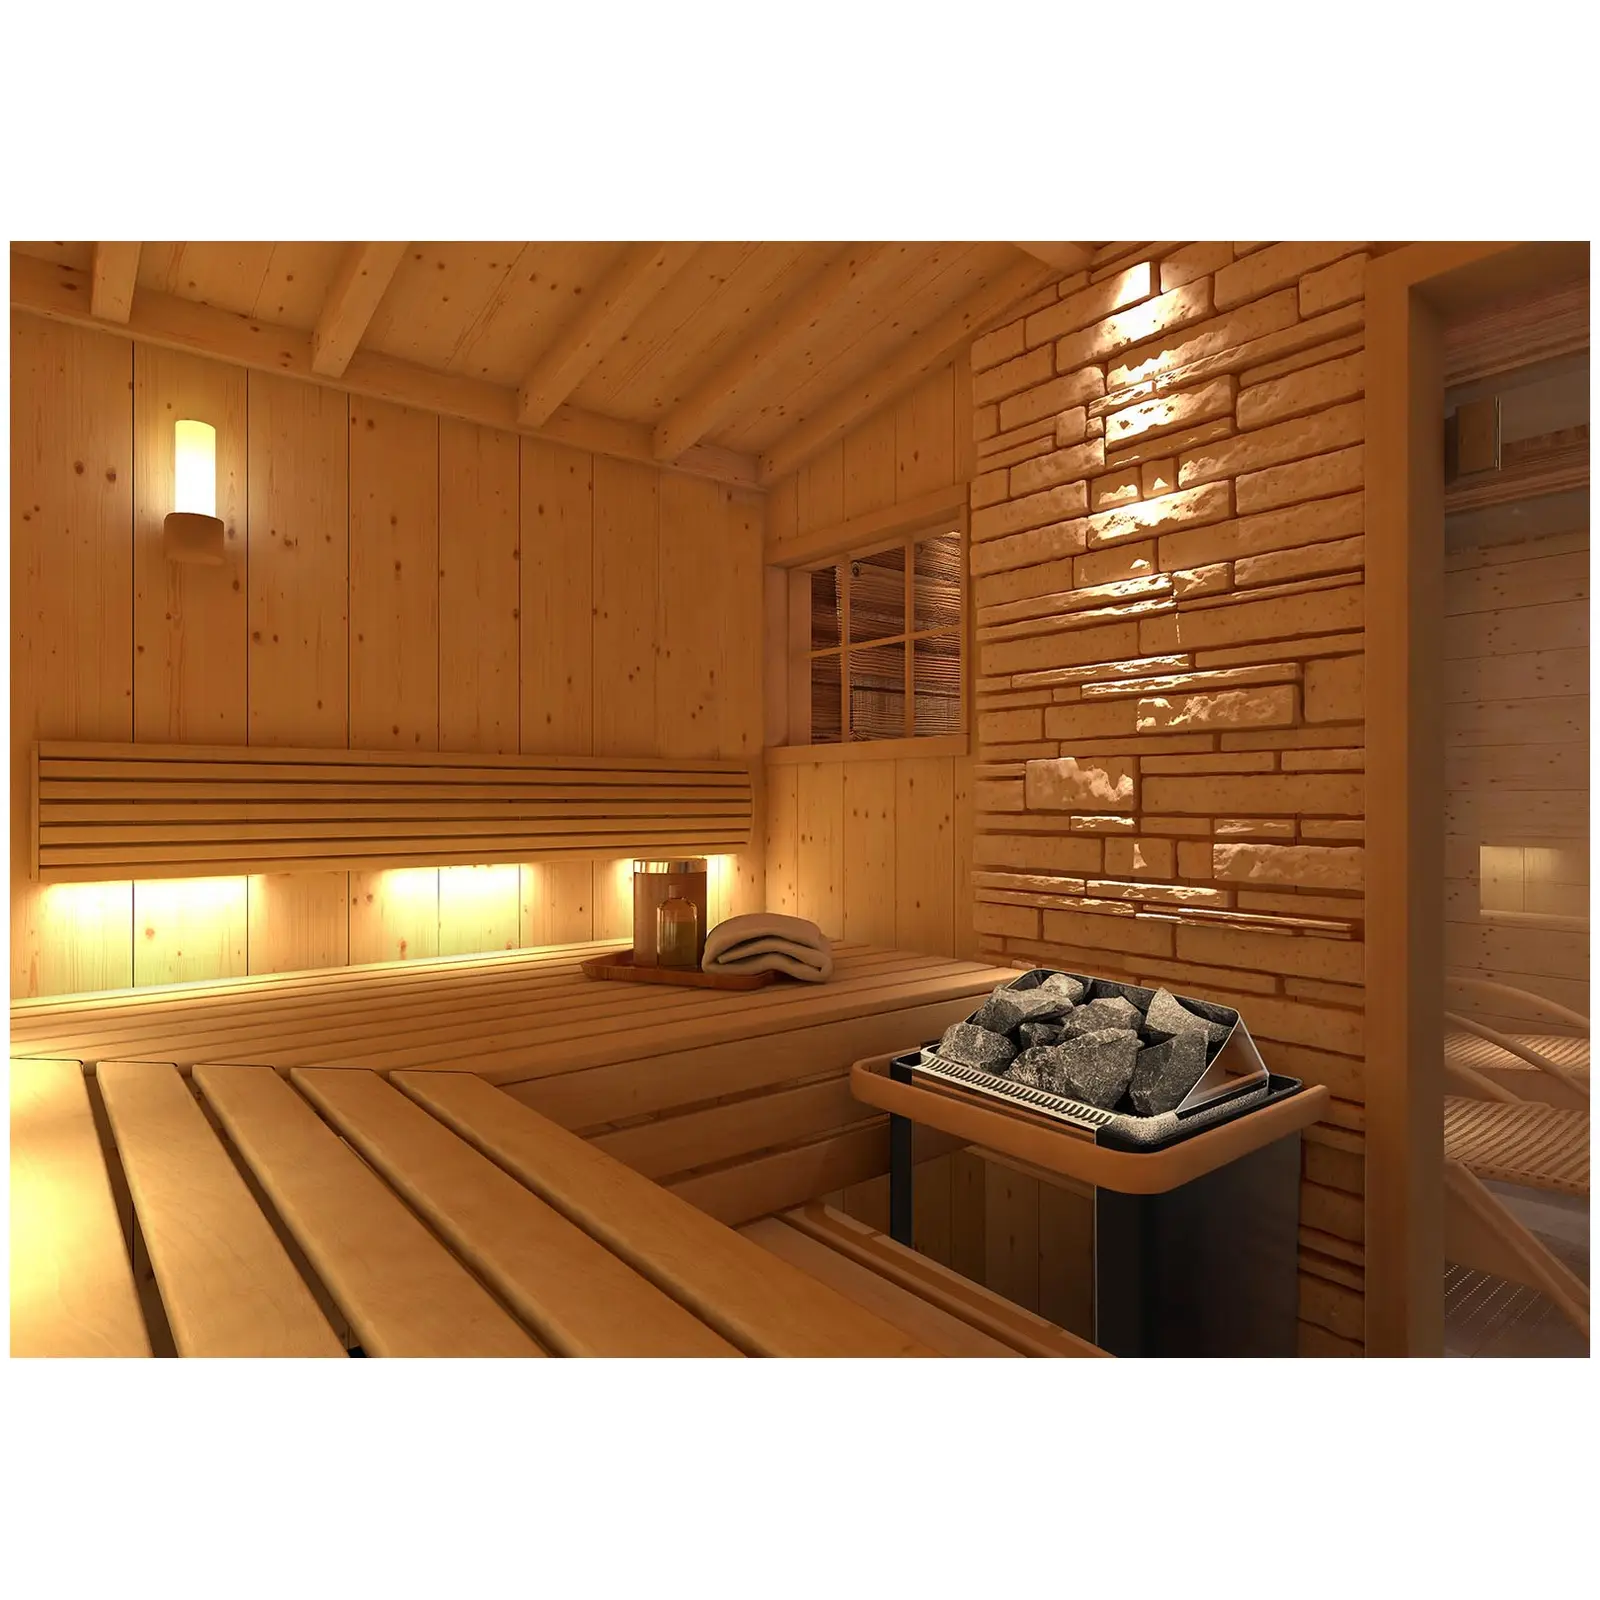 Zestaw Piec do sauny - elektryczny - 9 kW + Panel sterujący do sauny - 400 V 3 N - czujnik temperatury